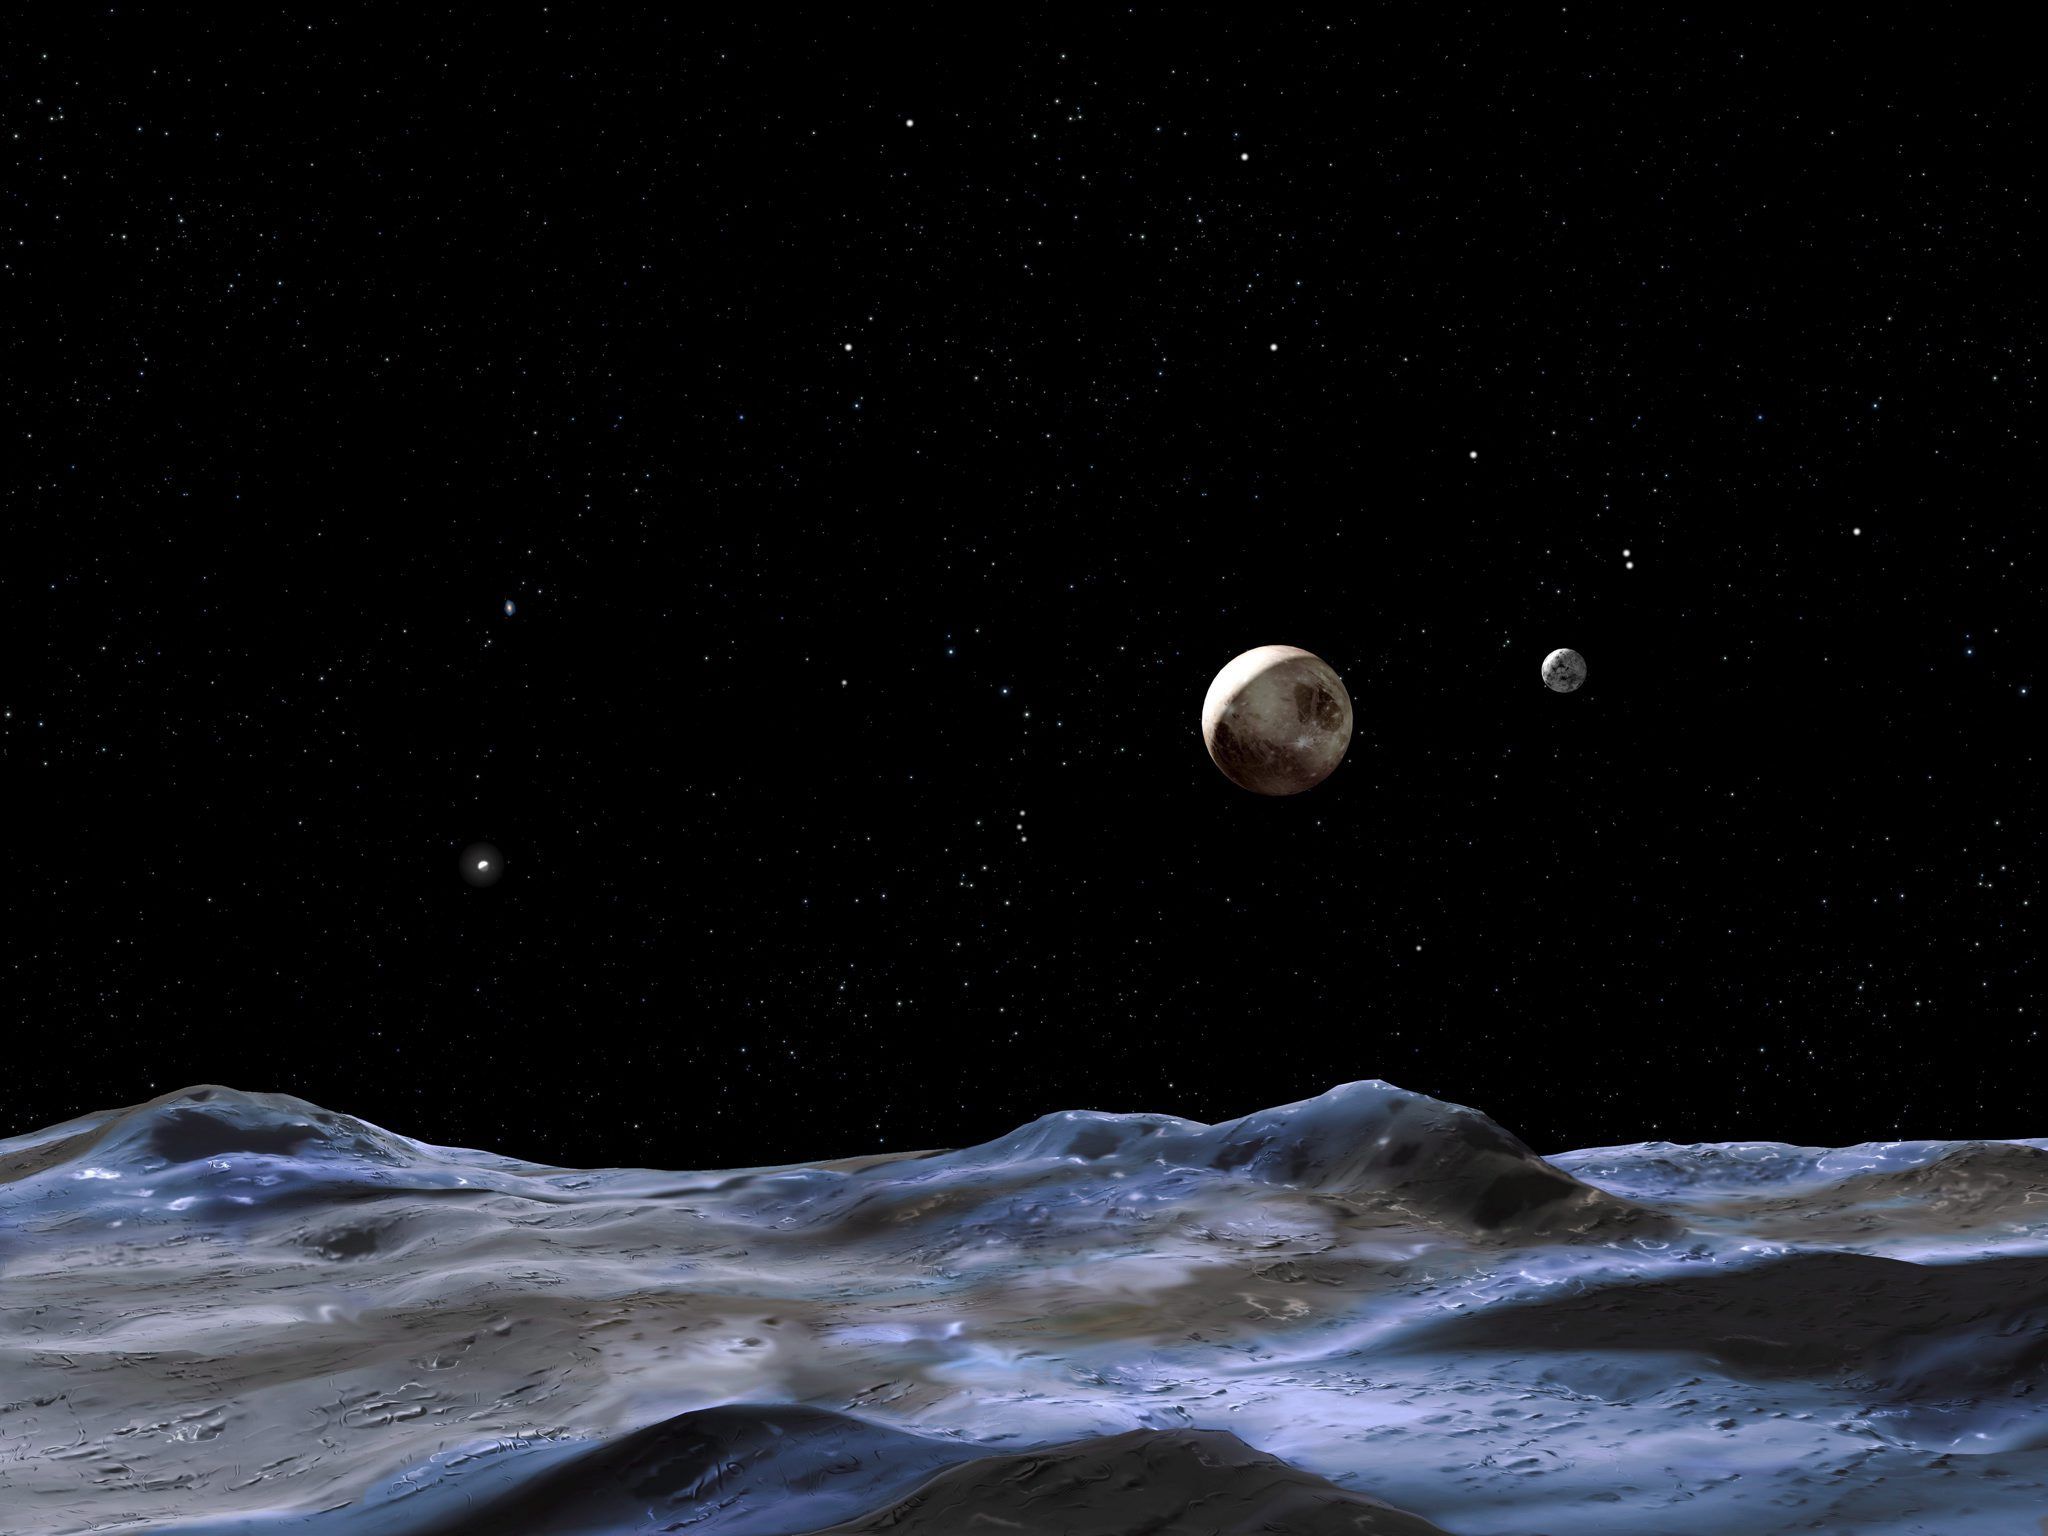 Plutón tiene un océano subterráneo, compuestos orgánicos, una atmósfera multicapa, entre otras características de un planeta.